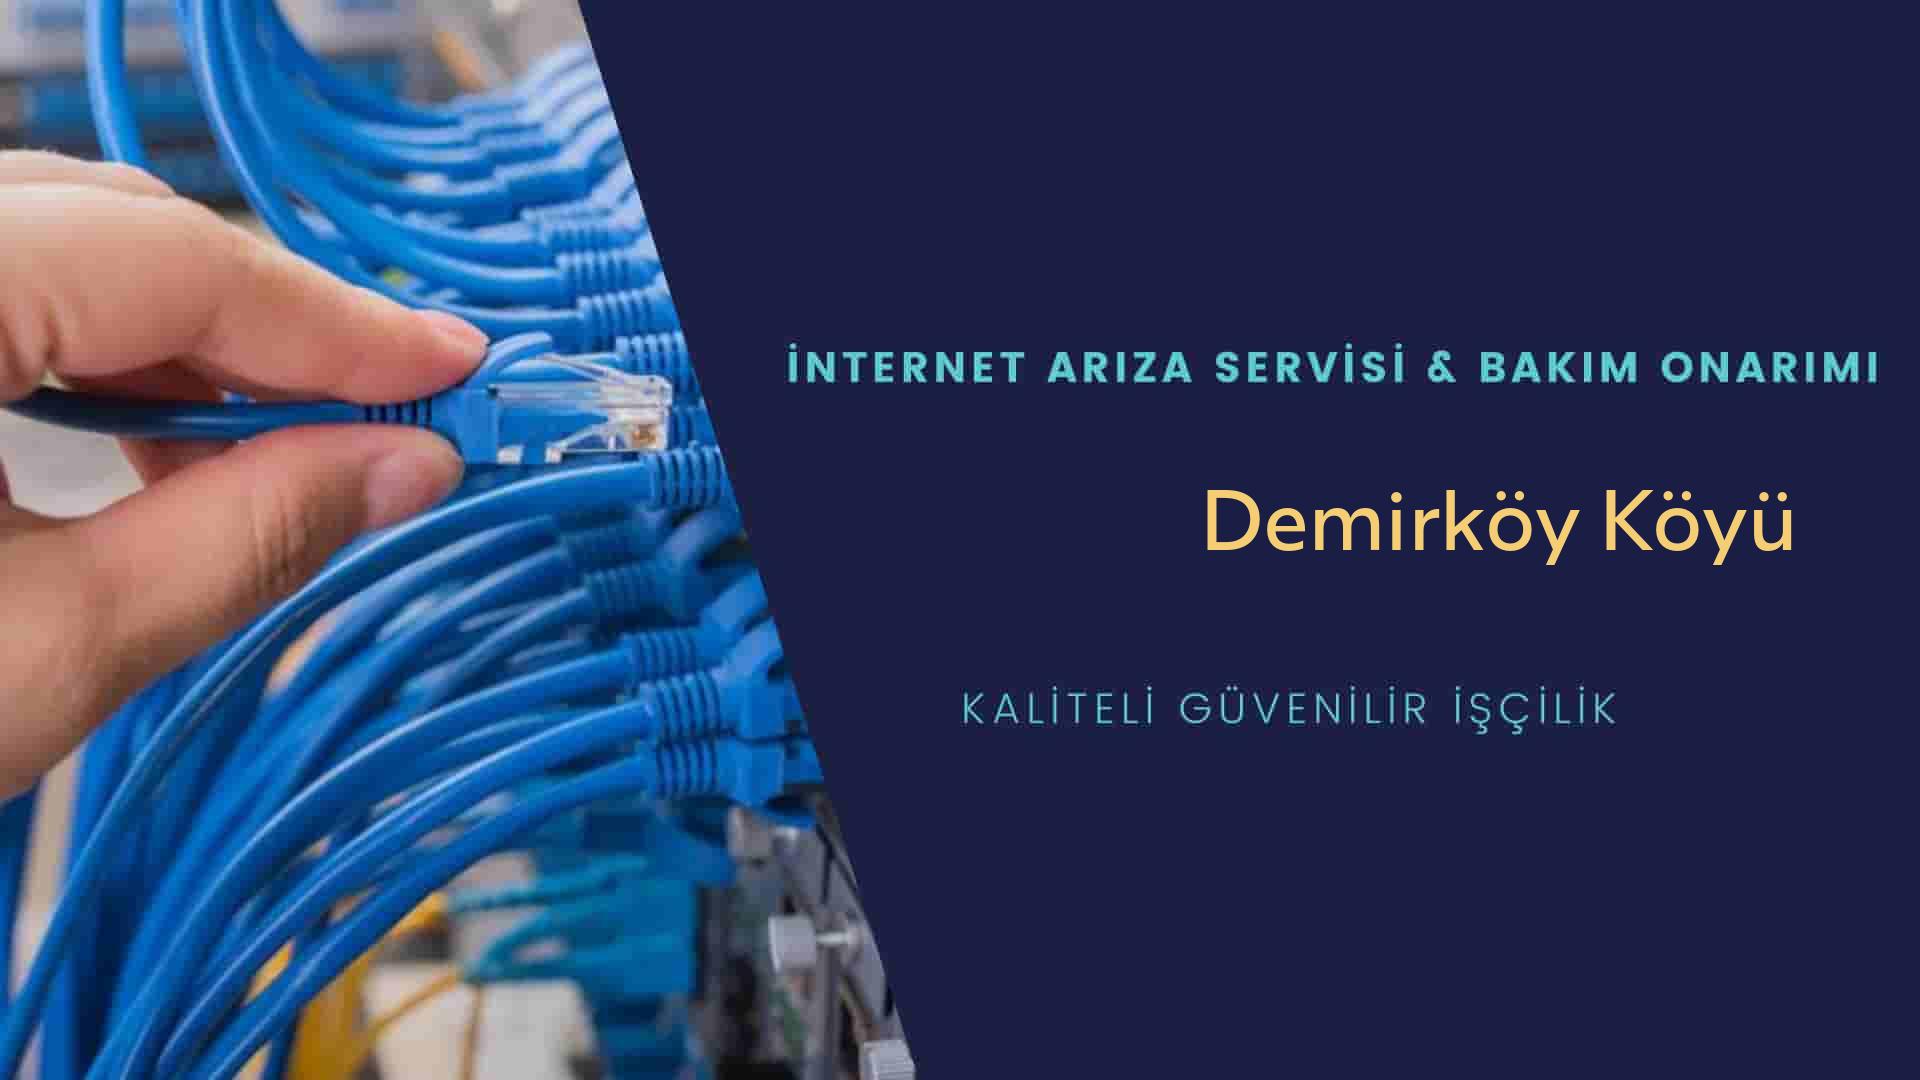 Demirköy Köyü internet kablosu çekimi yapan yerler veya elektrikçiler mi? arıyorsunuz doğru yerdesiniz o zaman sizlere 7/24 yardımcı olacak profesyonel ustalarımız bir telefon kadar yakındır size.